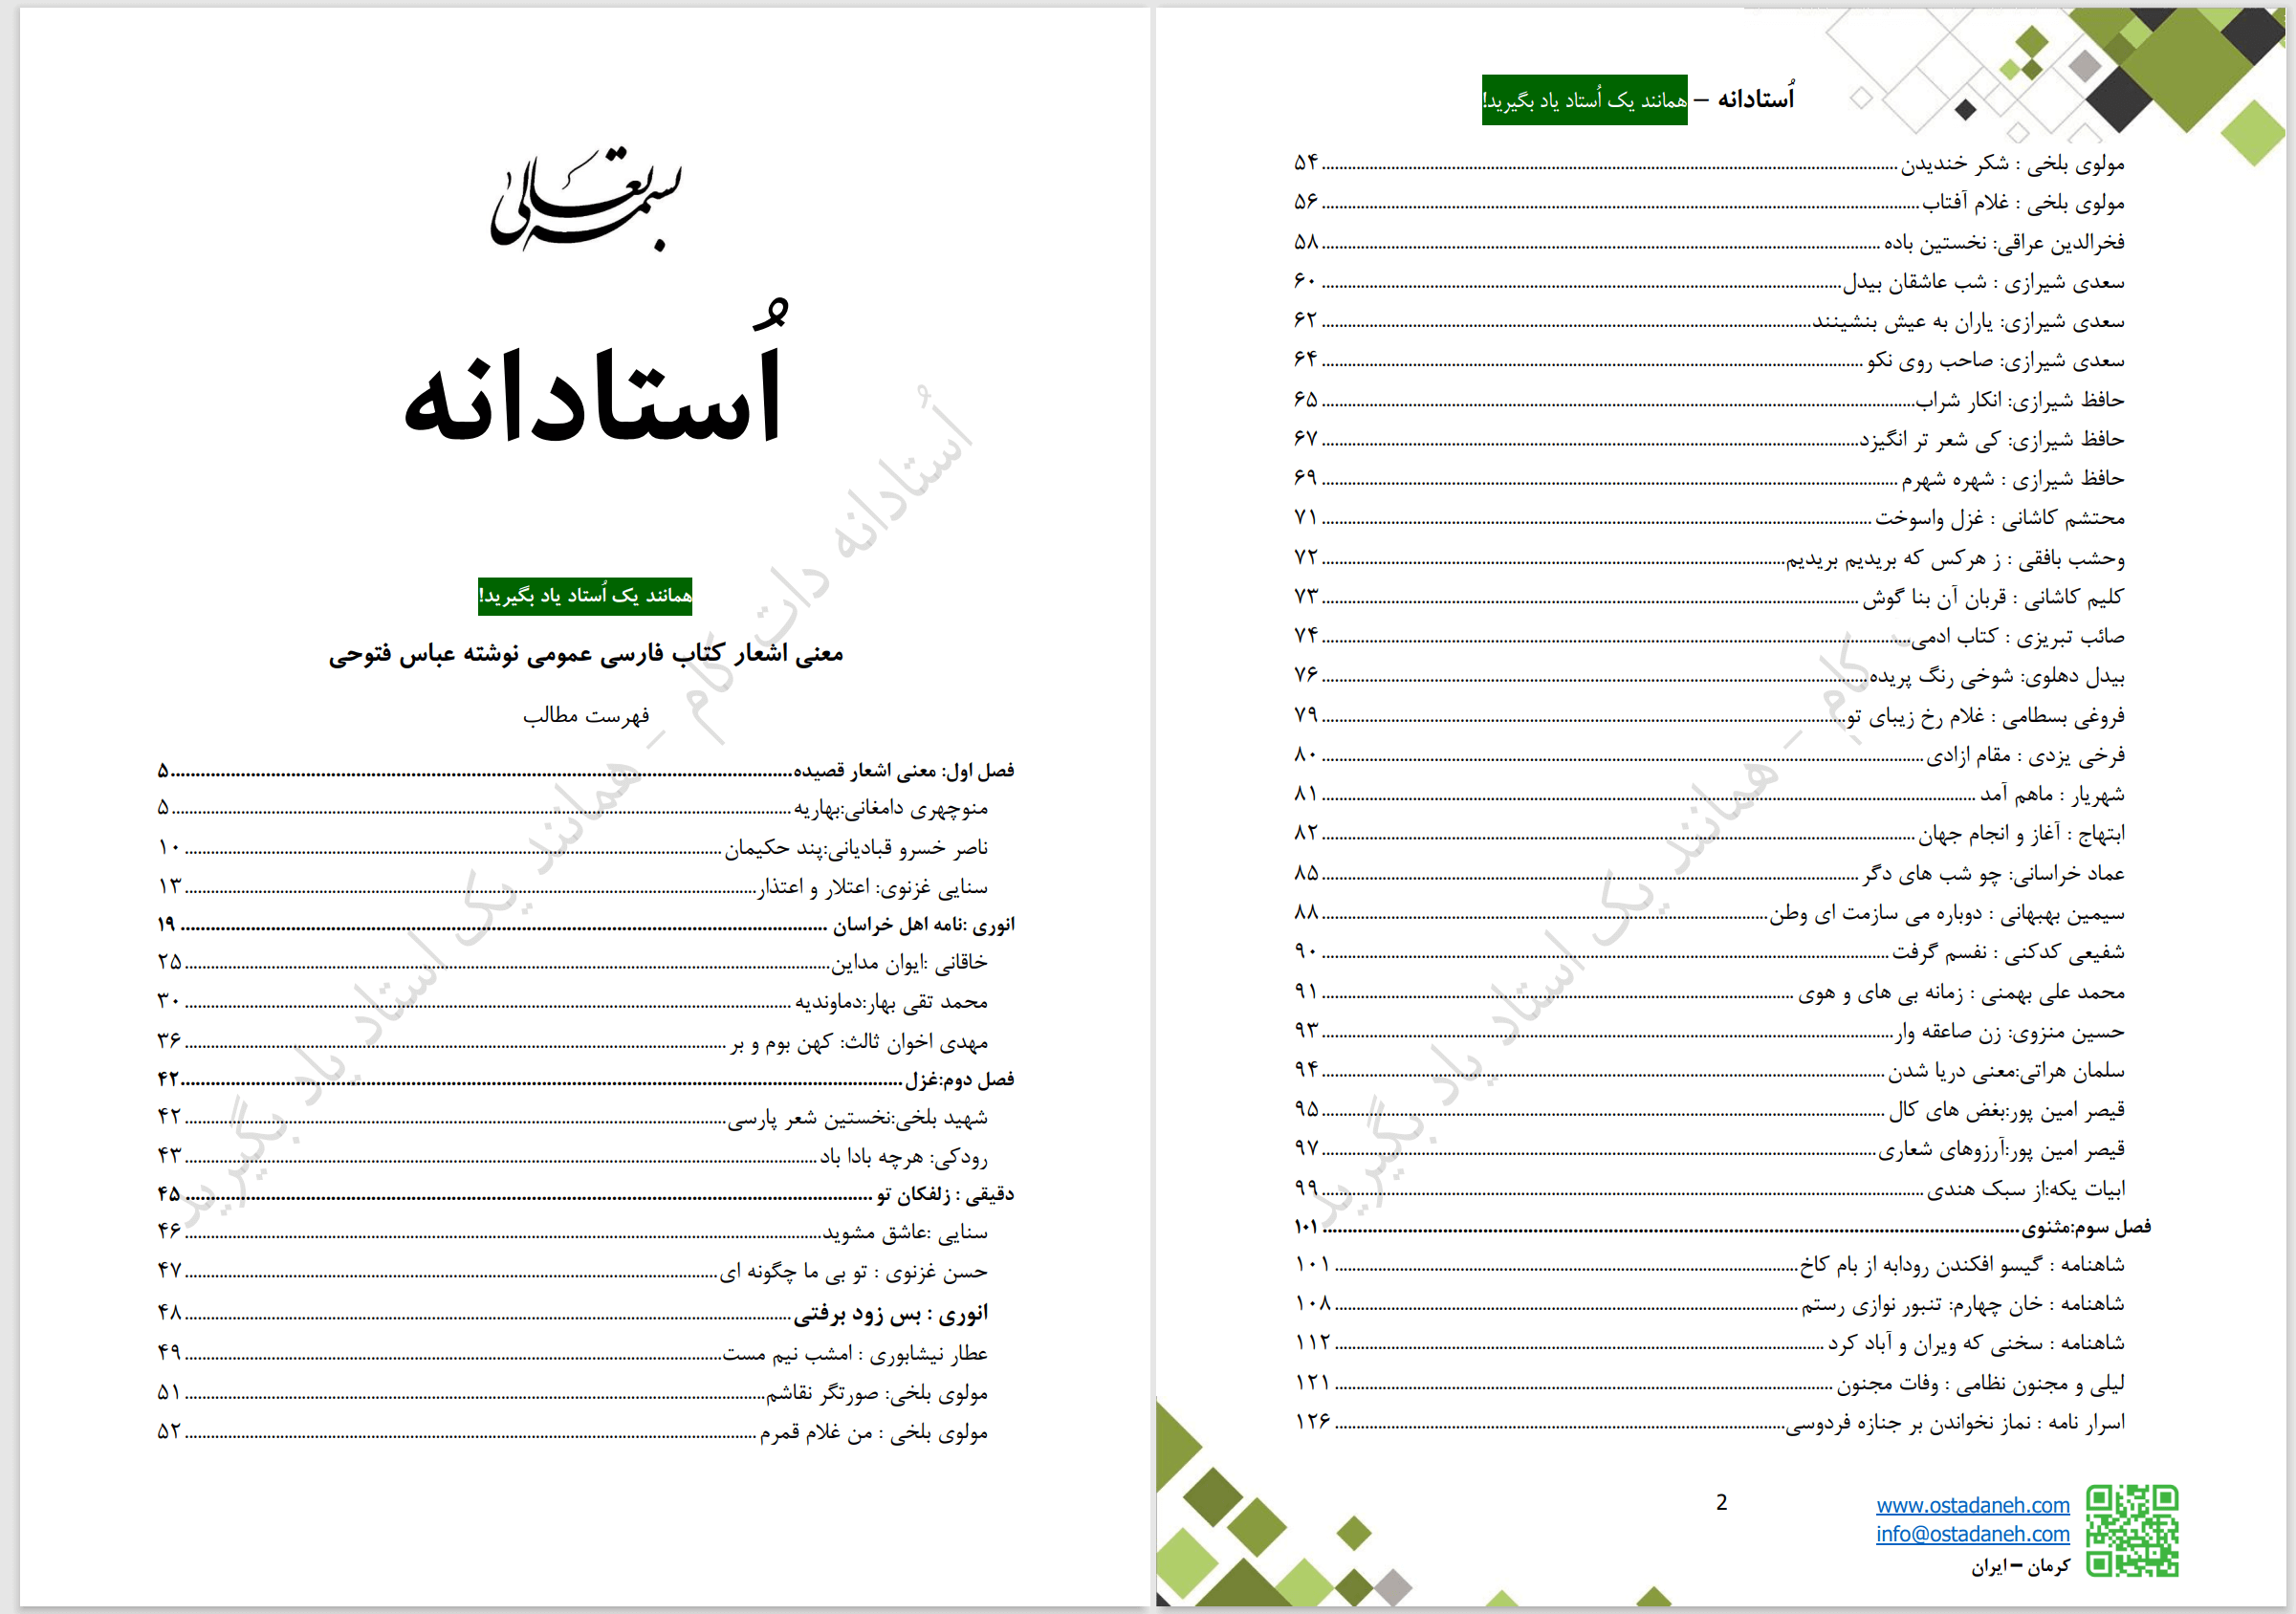 معنی اشعار فارسی عمومی فتوحی